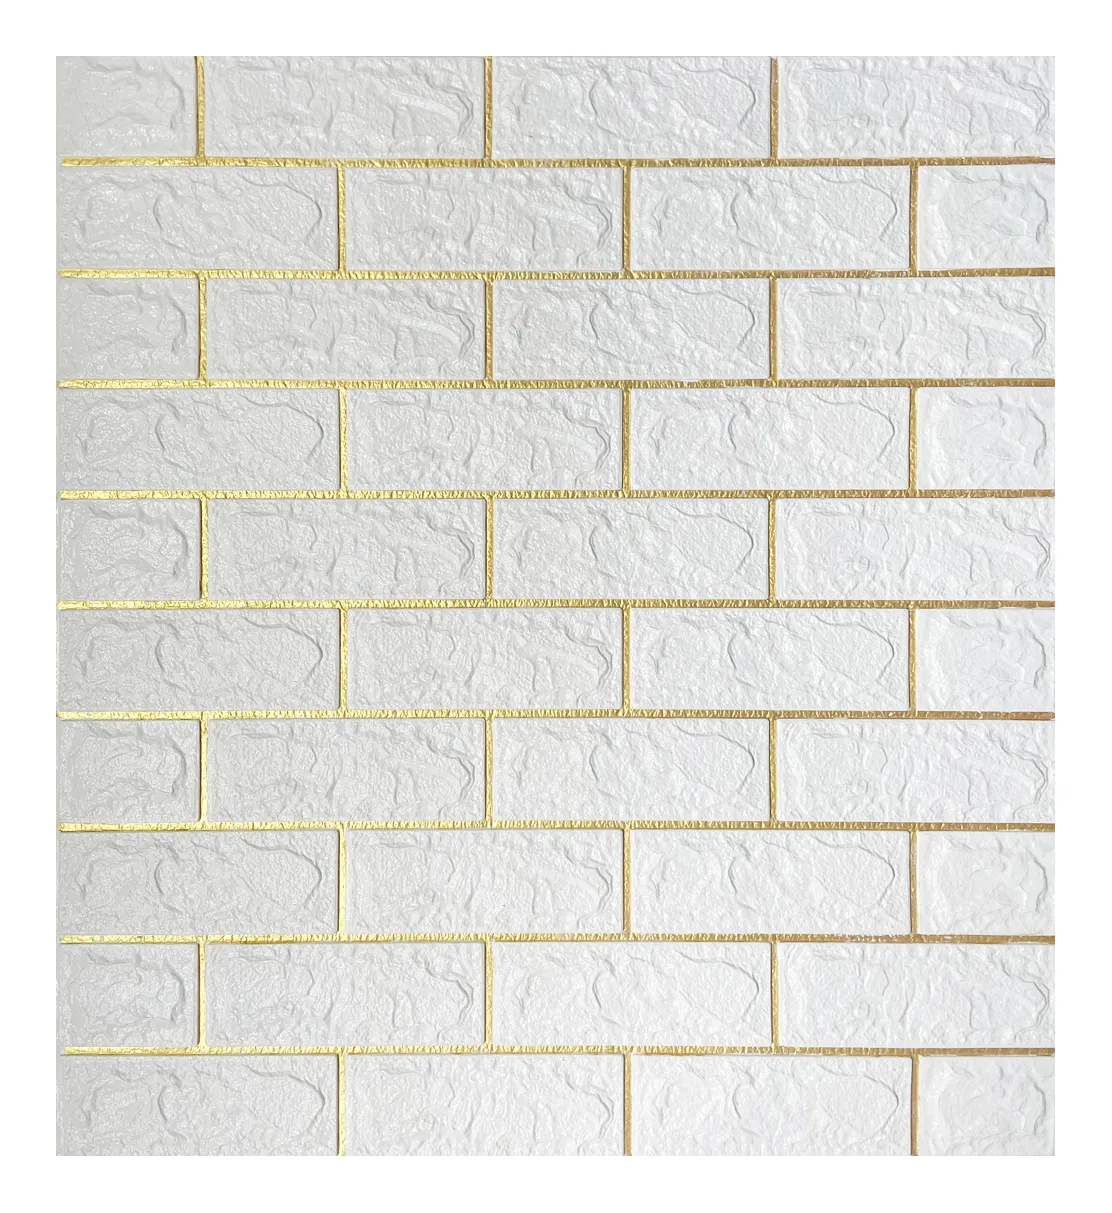 NEU 3D Brick Wanda uf kleber Wallpaper Decor Foam Wasserdichte Tapete für Kinder Wohnzimmer DIY